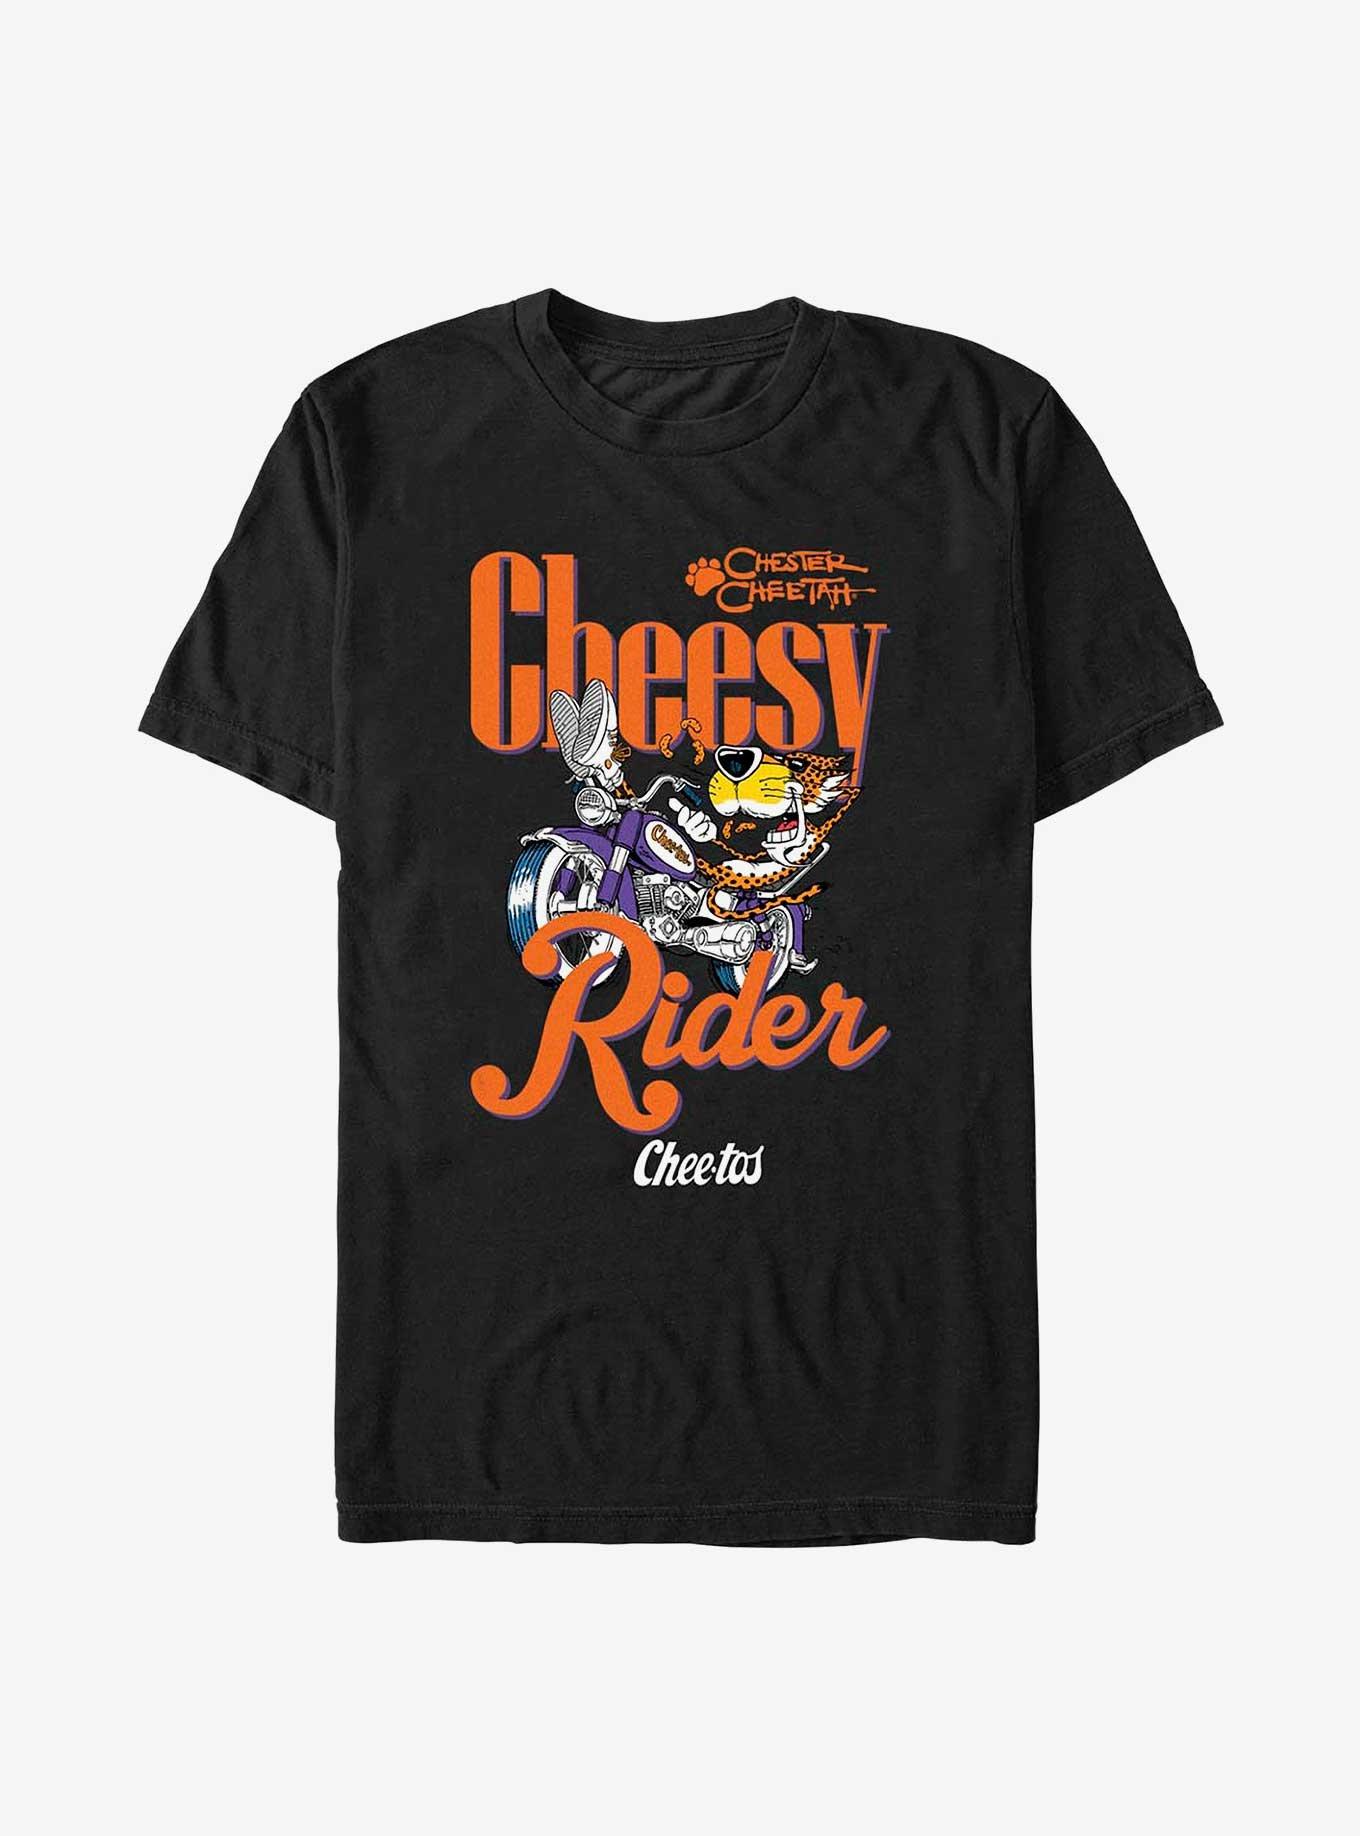 Cheetos Chester Cheesy Rider T-Shirt, BLACK, hi-res